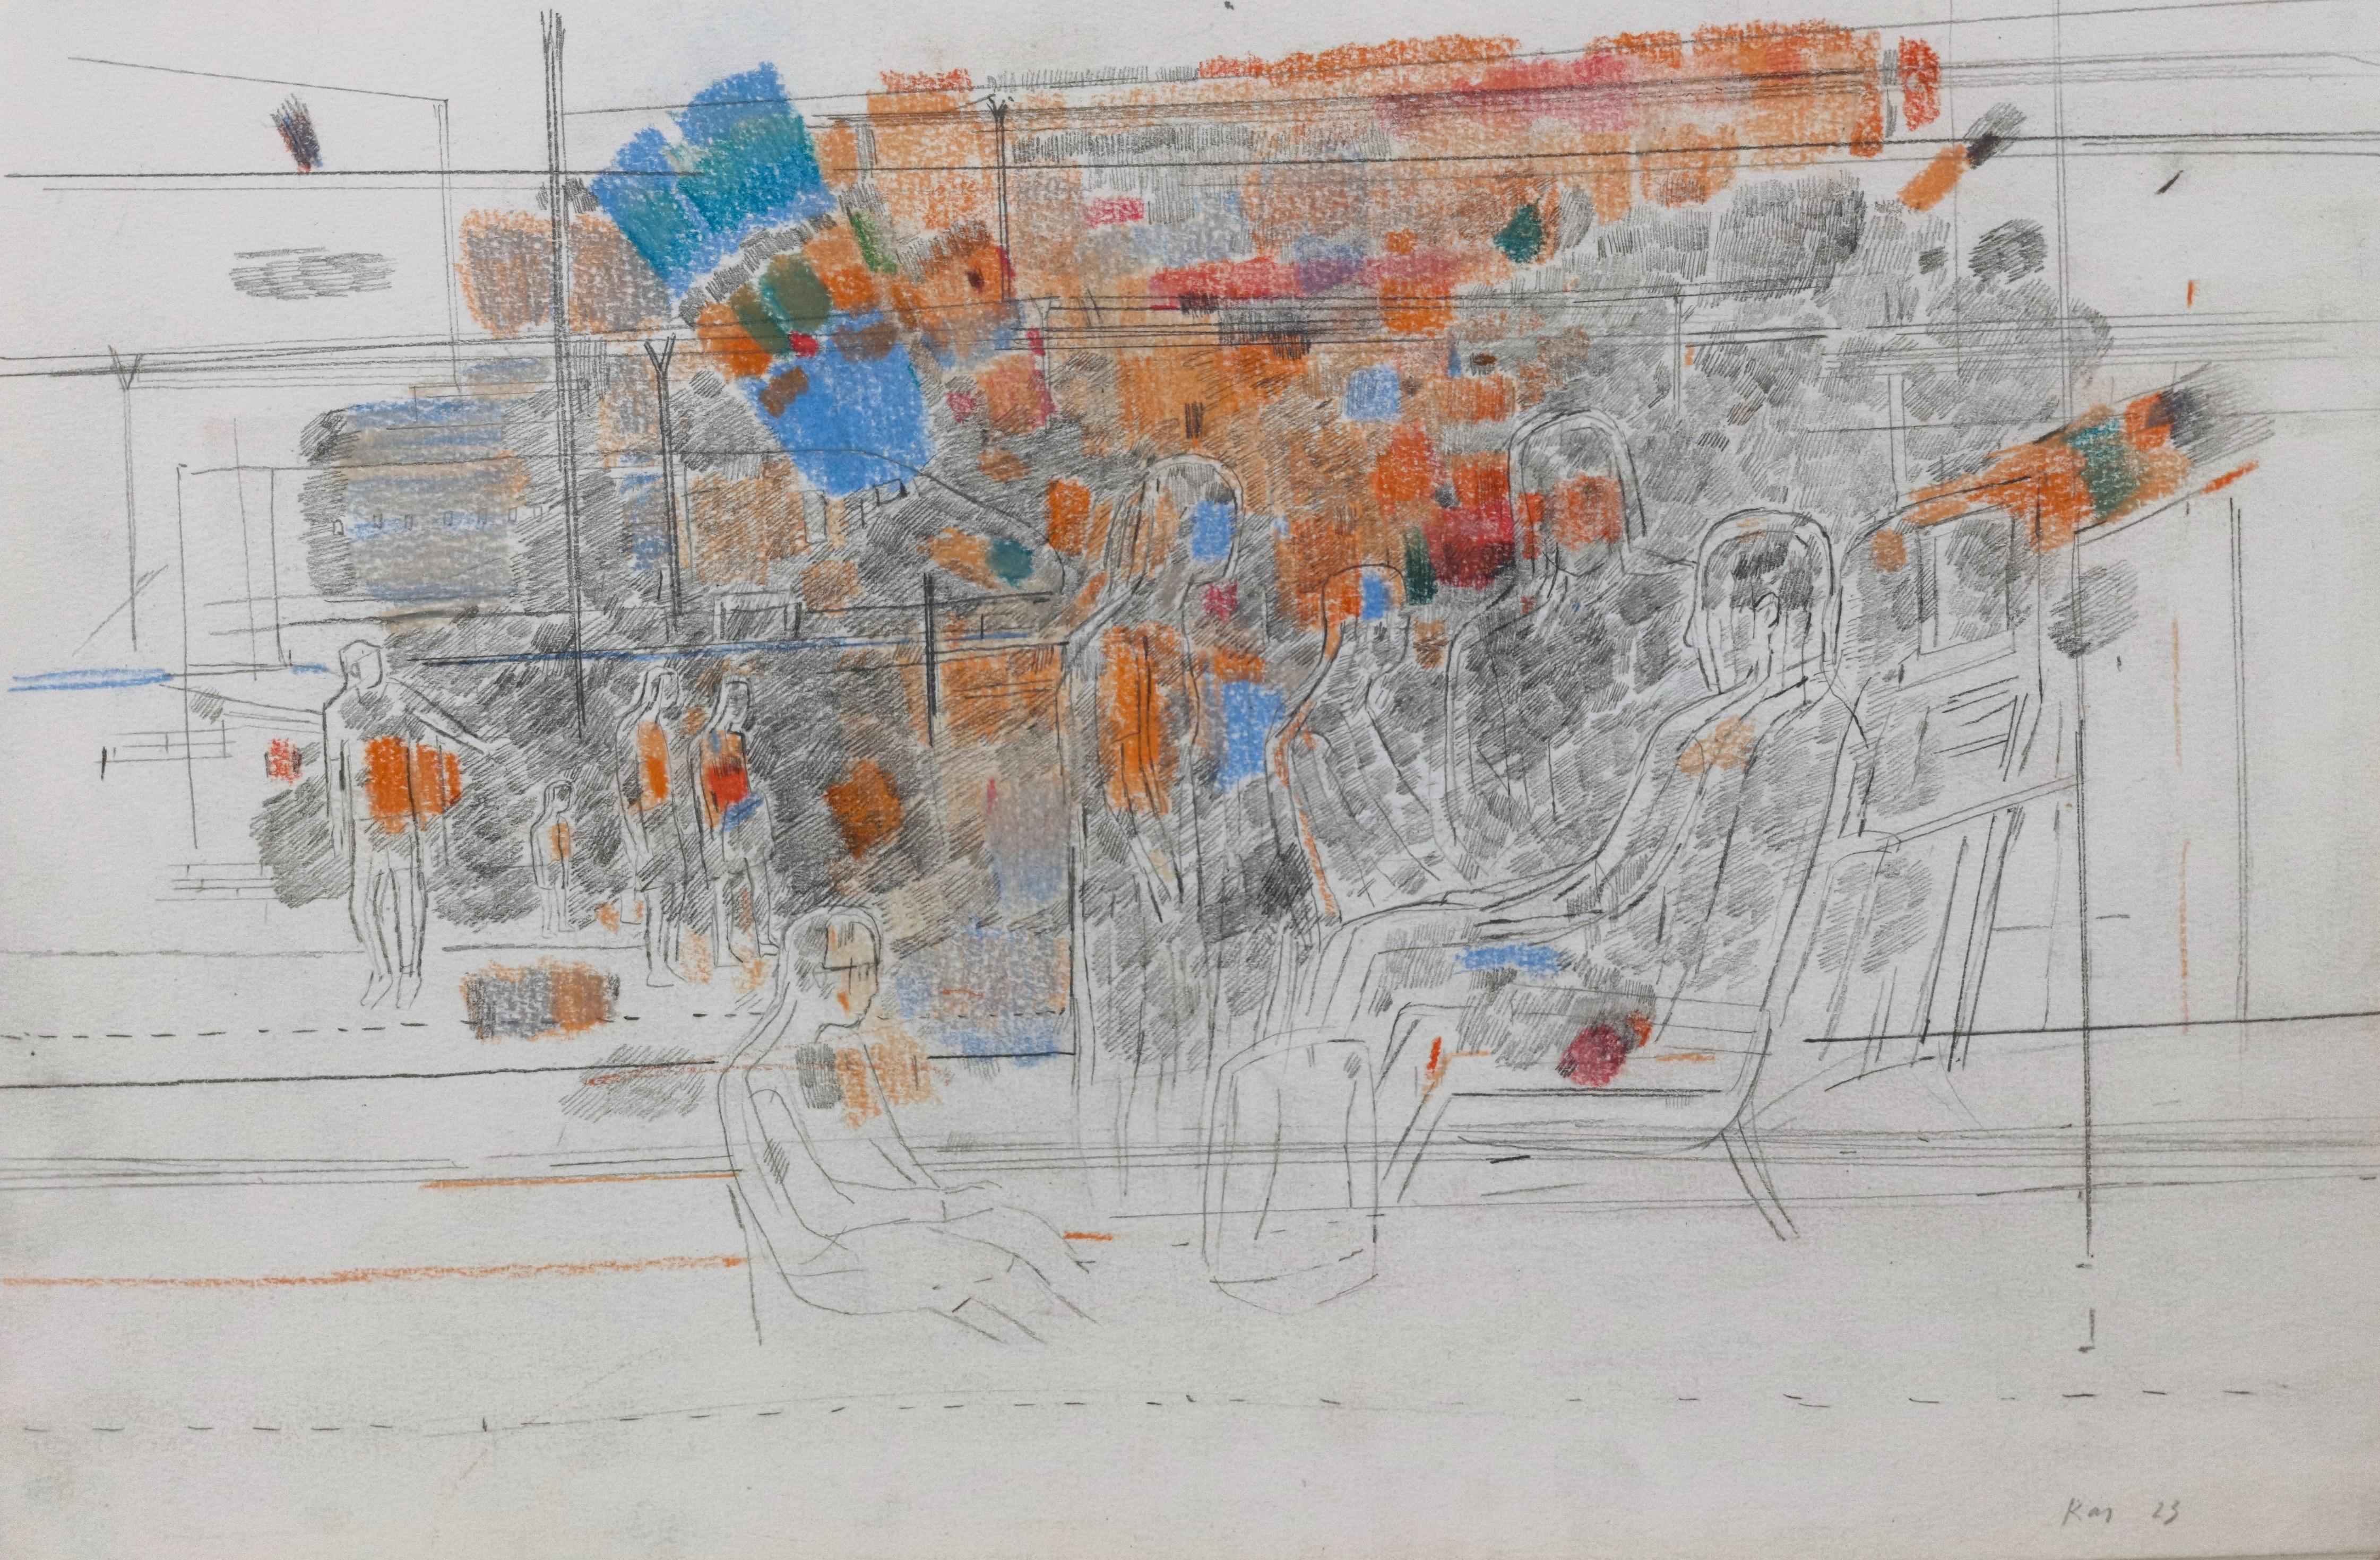 Pastell & Bleistifte auf Papier

Anna Kazmina ist eine 1987 geborene russische Künstlerin, die zwischen Moskau, Russland, und Peking, China, lebt. Sie schloss ihr Studium an der Fakultät für Kunst der Staatlichen Universität Moskau ab und